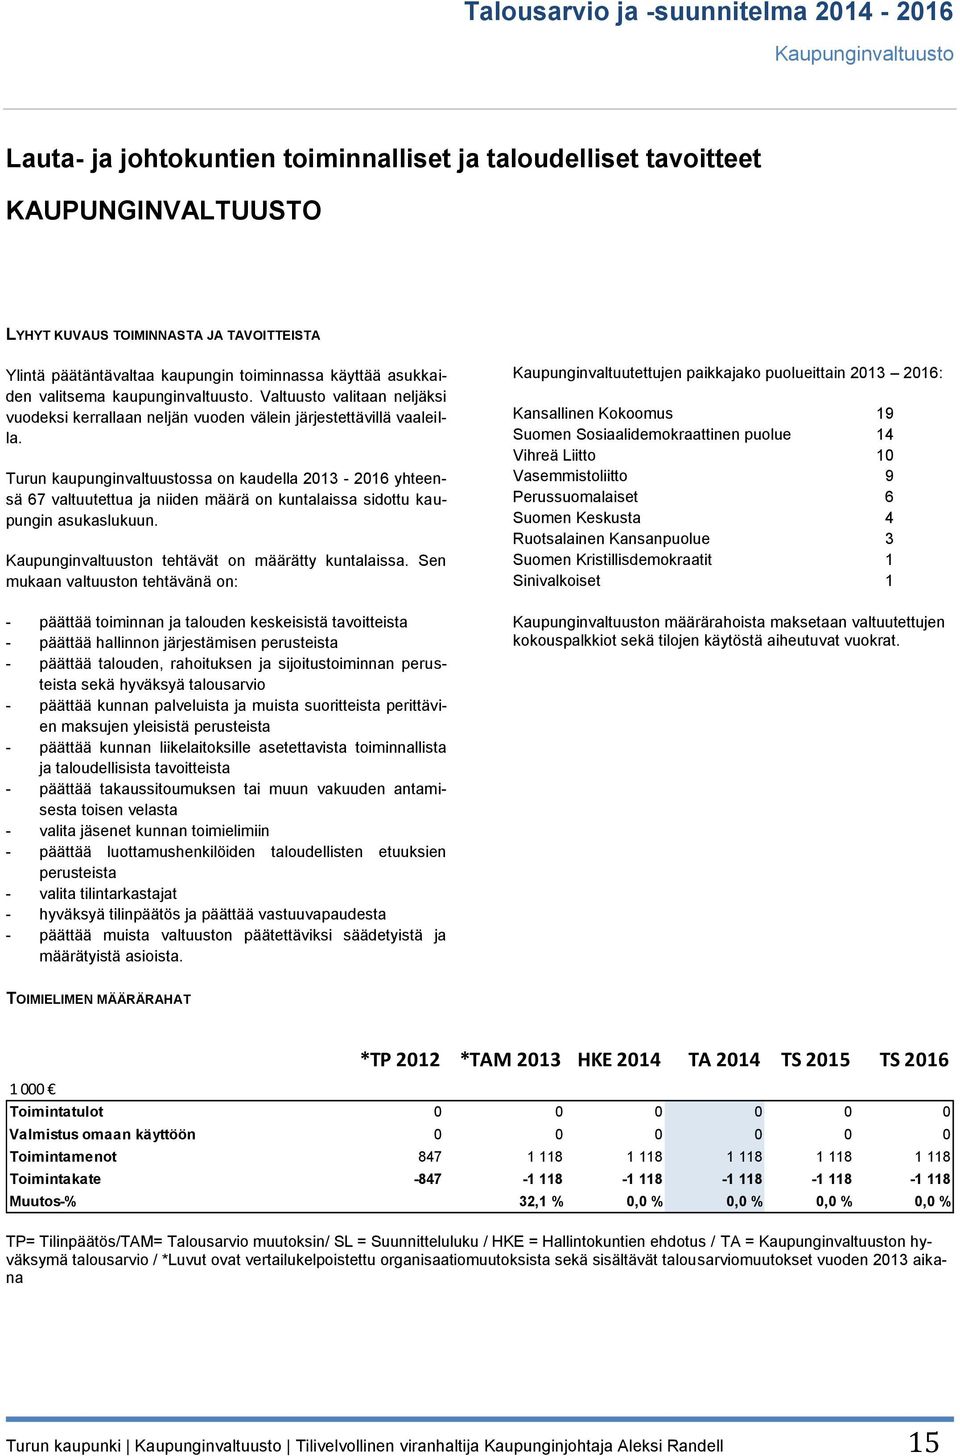 Turun kaupunginvaltuustossa on kaudella 2013-2016 yhteensä 67 valtuutettua ja niiden määrä on kuntalaissa sidottu kaupungin asukaslukuun. Kaupunginvaltuuston tehtävät on määrätty kuntalaissa.